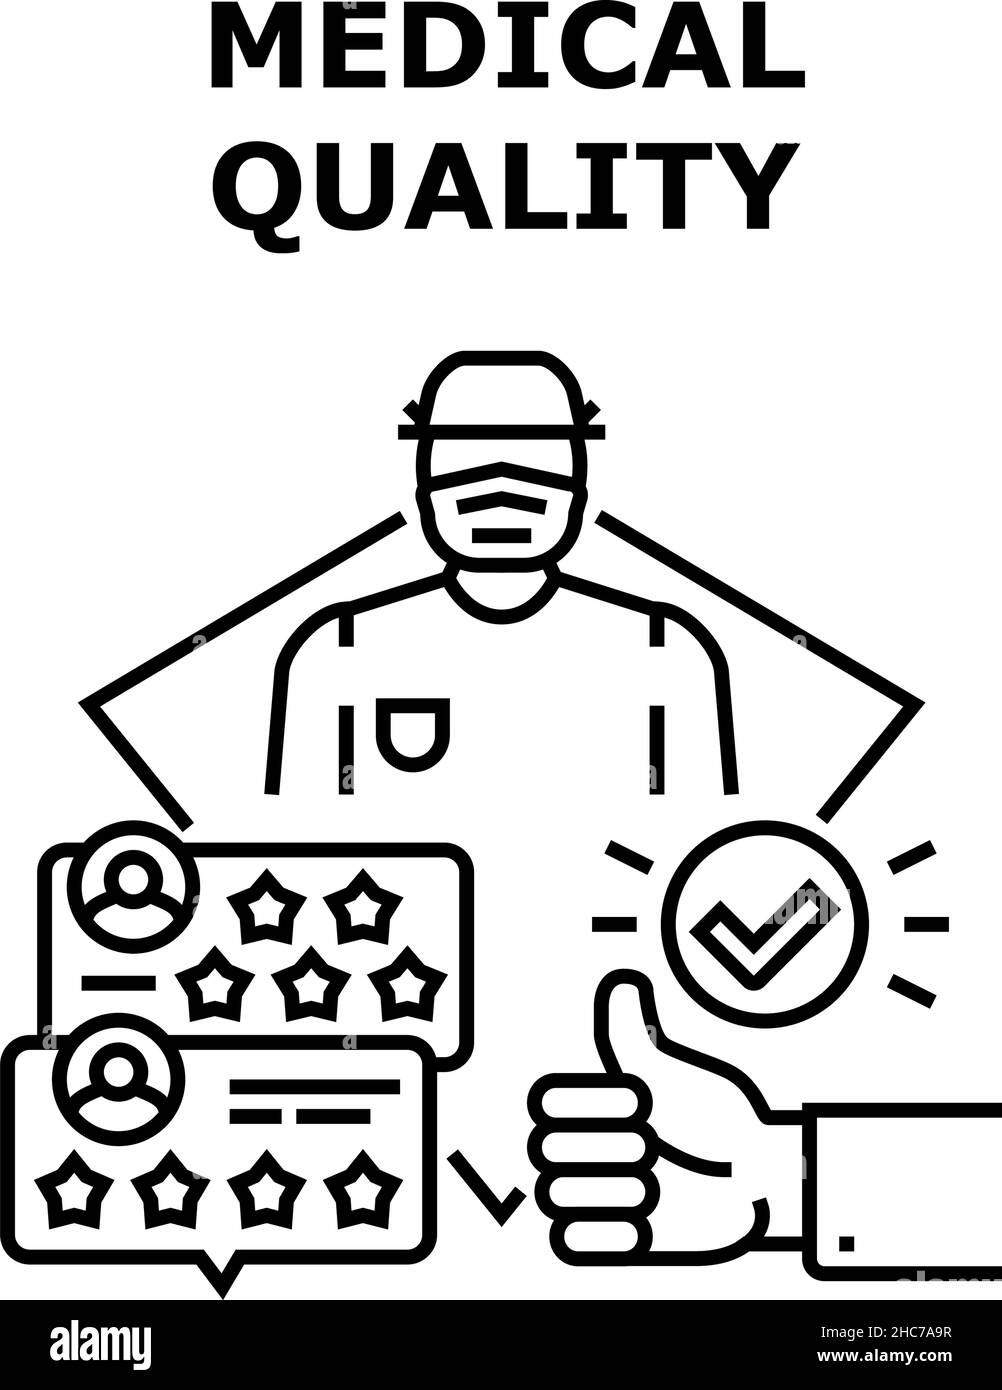 Medical Quality Vector Concept Black Illustration Illustrazione Vettoriale